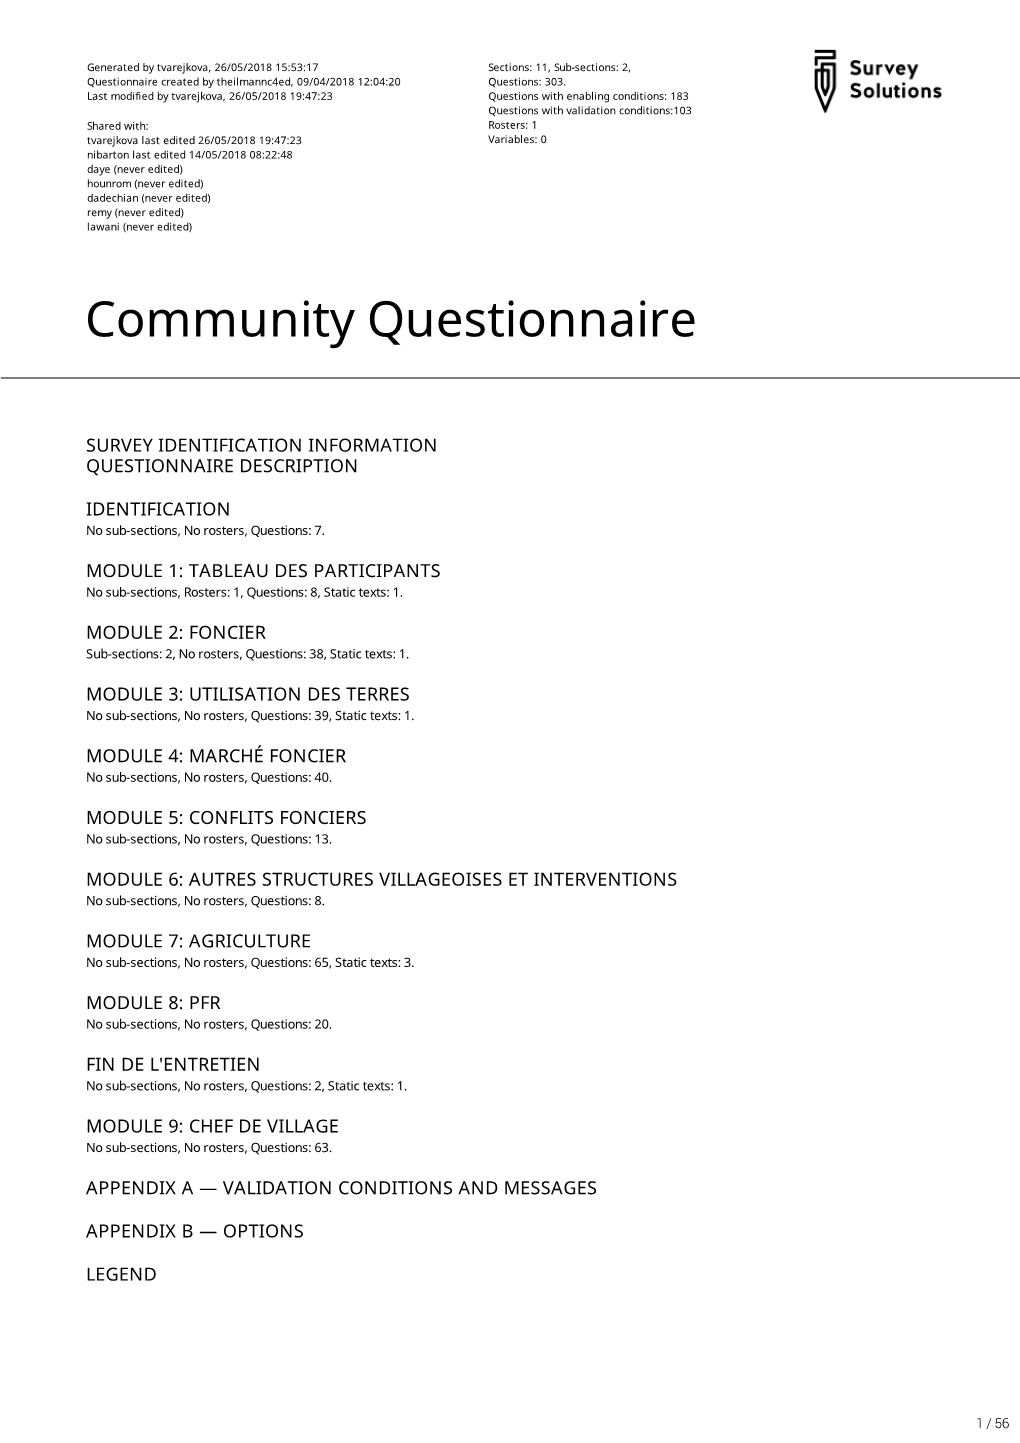 Community Questionnaire